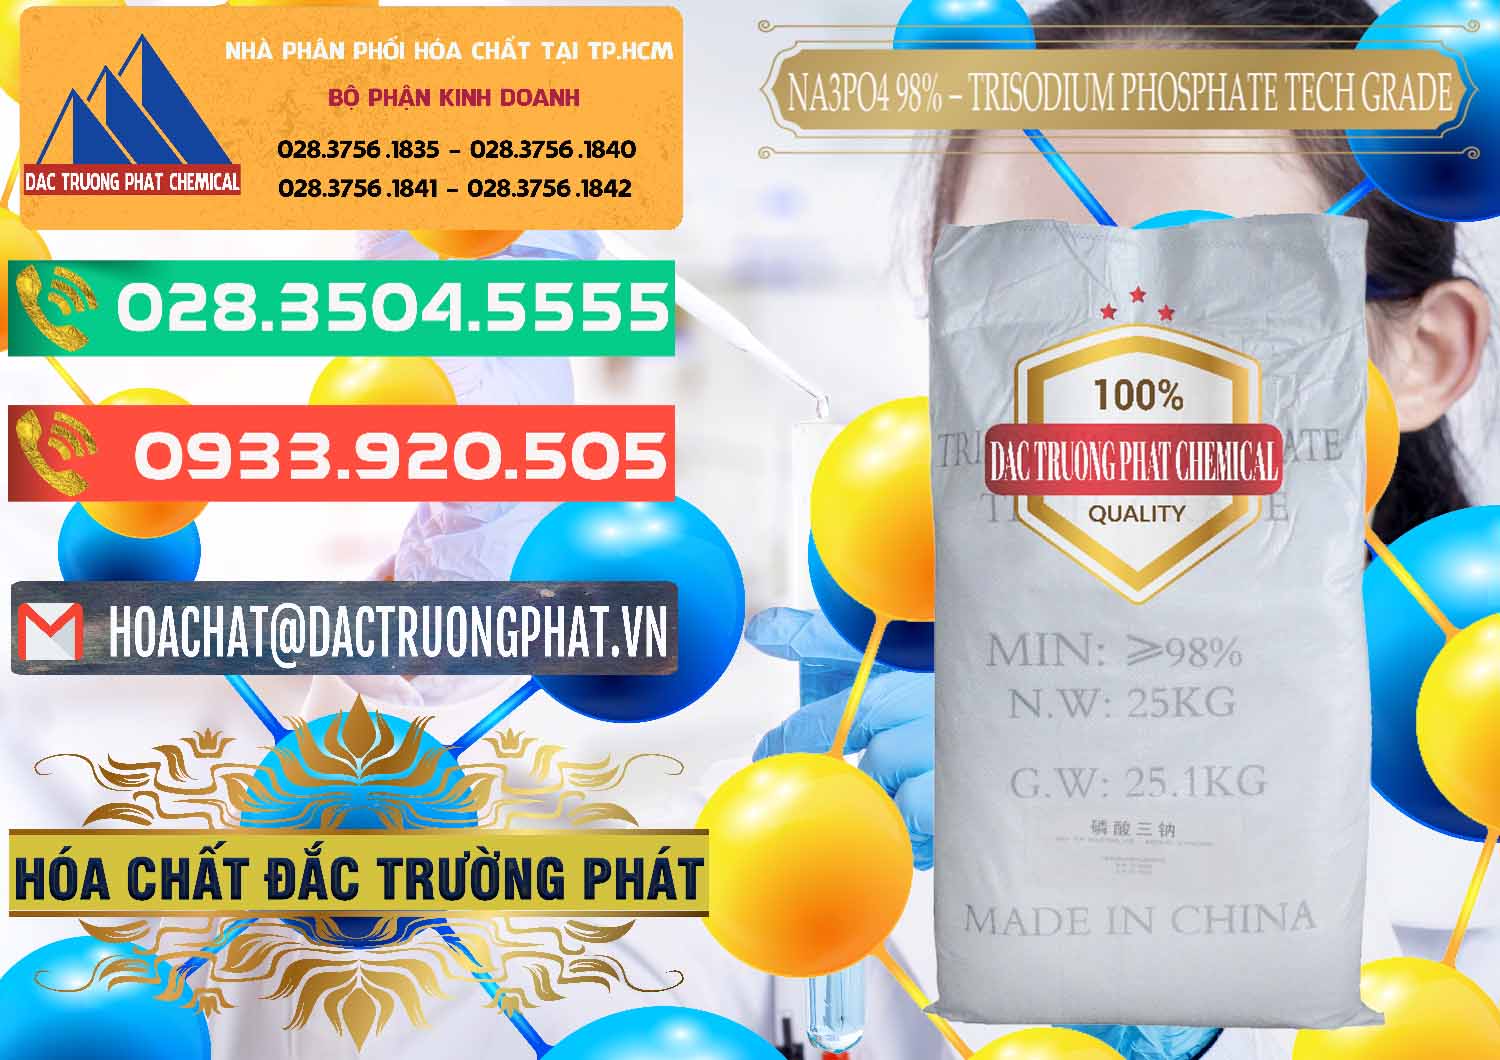 Cty chuyên cung ứng - bán Na3PO4 – Trisodium Phosphate 96% Tech Grade Trung Quốc China - 0104 - Công ty chuyên cung cấp - nhập khẩu hóa chất tại TP.HCM - congtyhoachat.com.vn